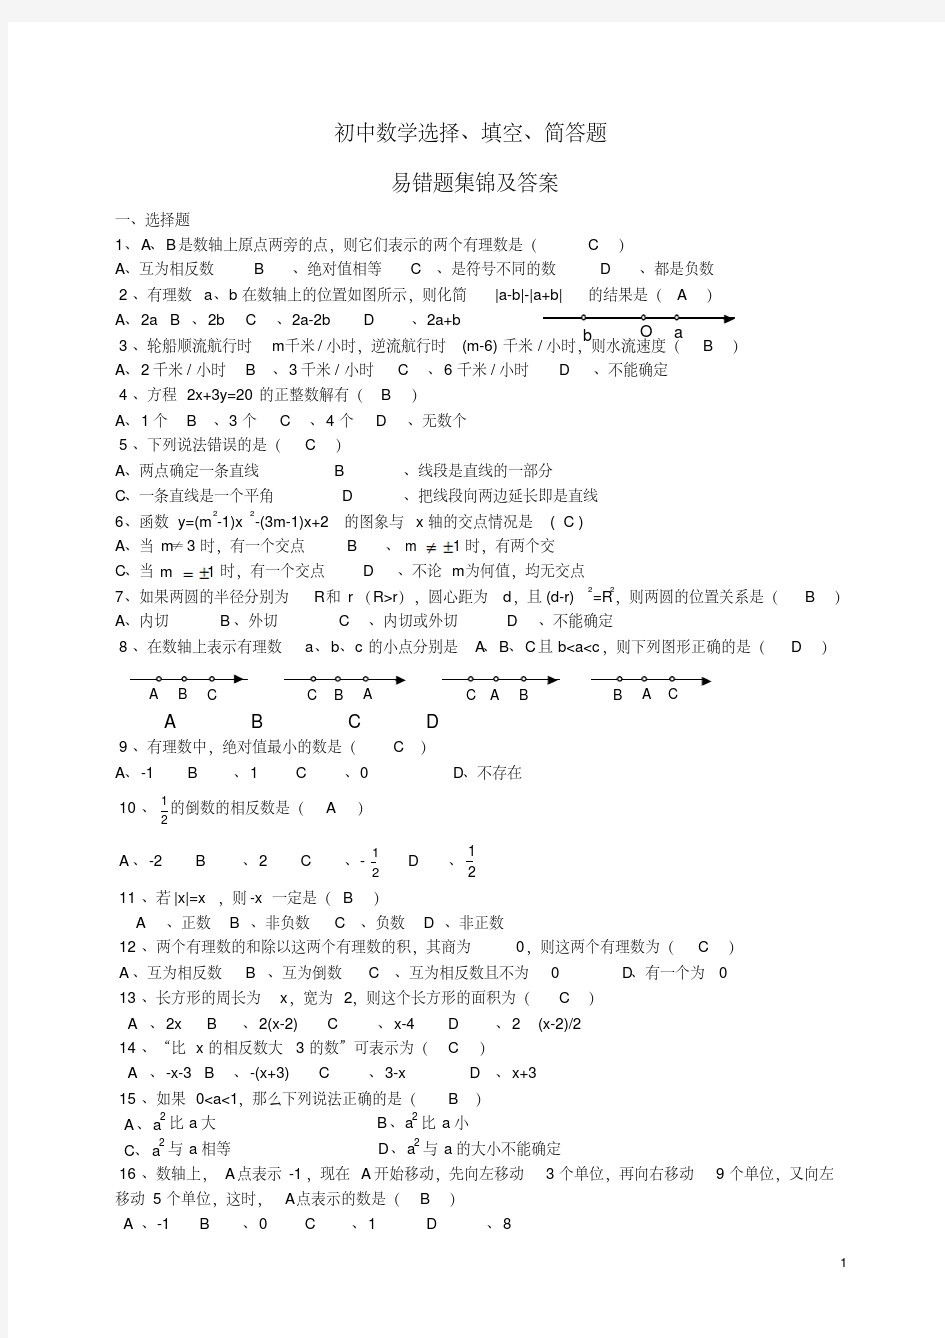 新版中考数学易错题集锦及答案-新版.pdf